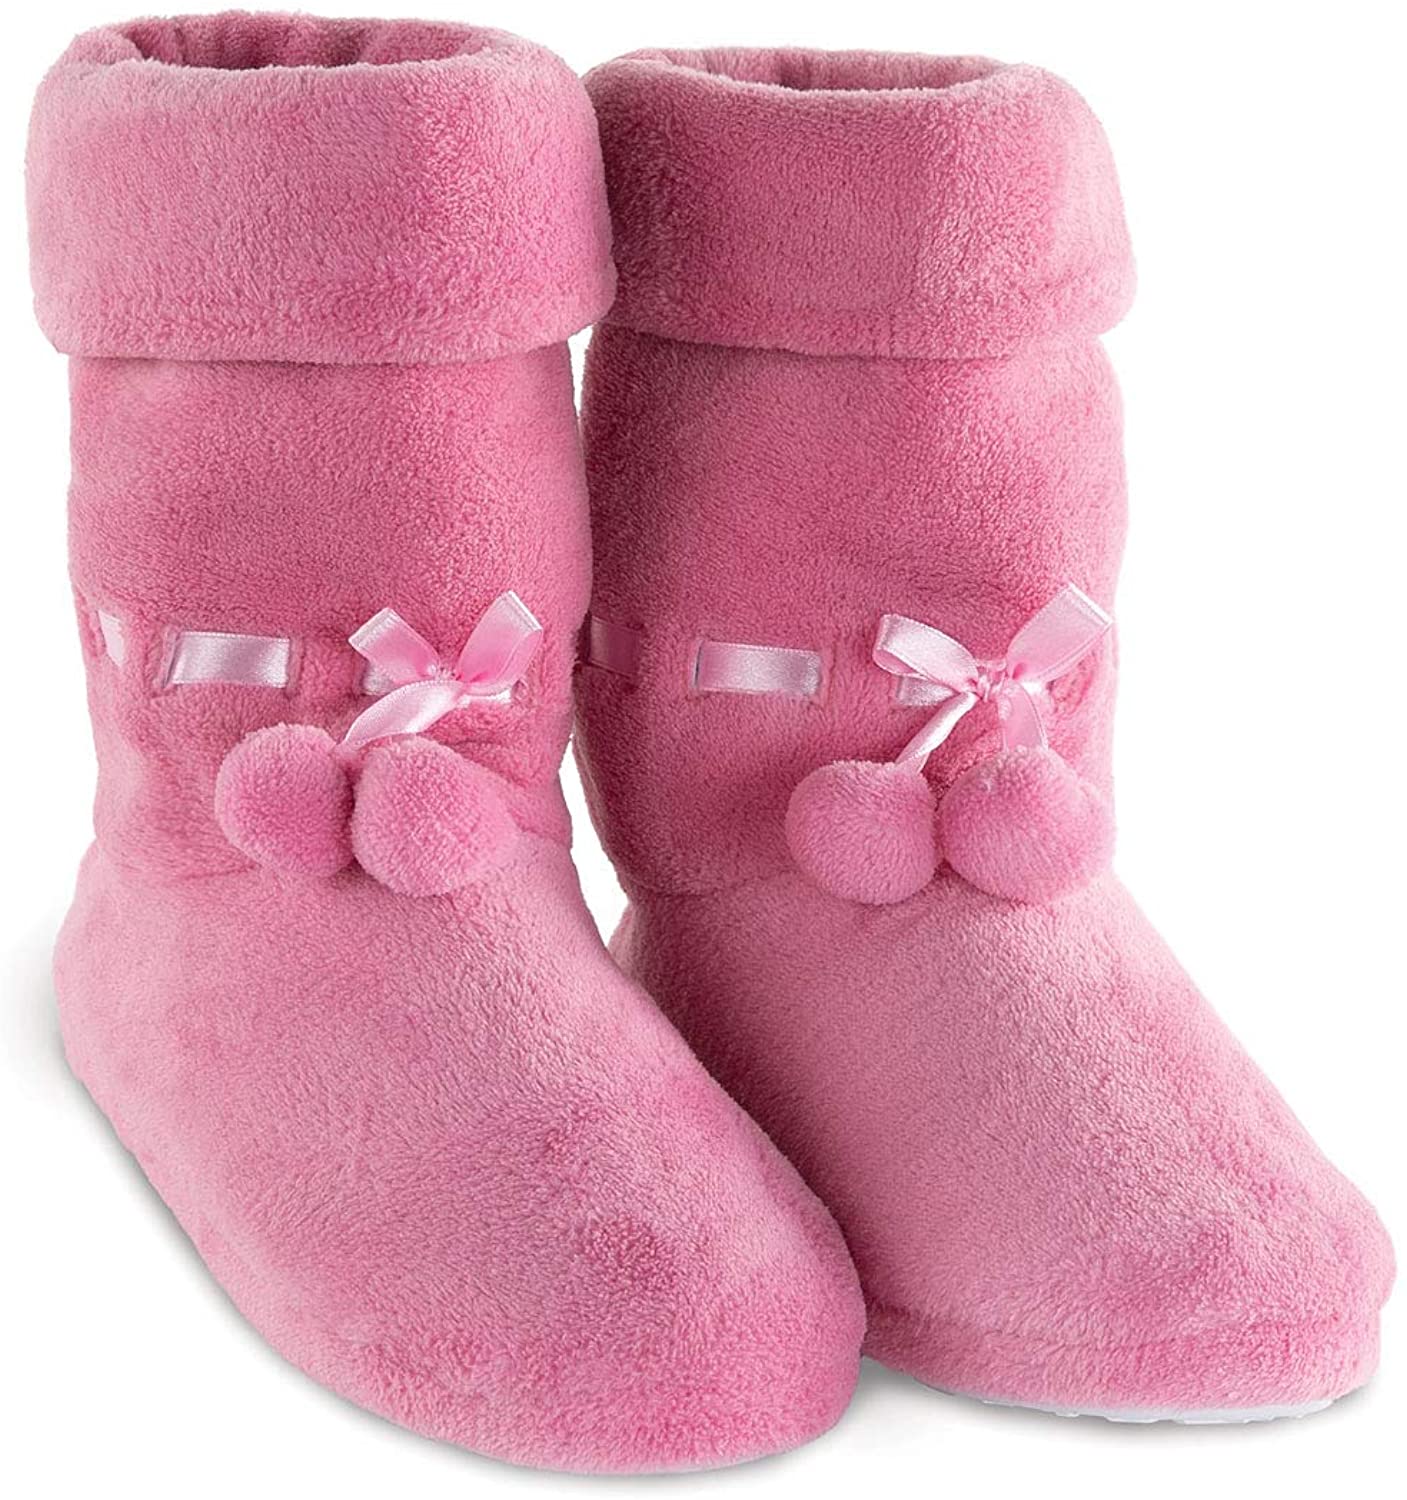 PajamaGram Fleece Slippers for Women - Slipper Boots for Women